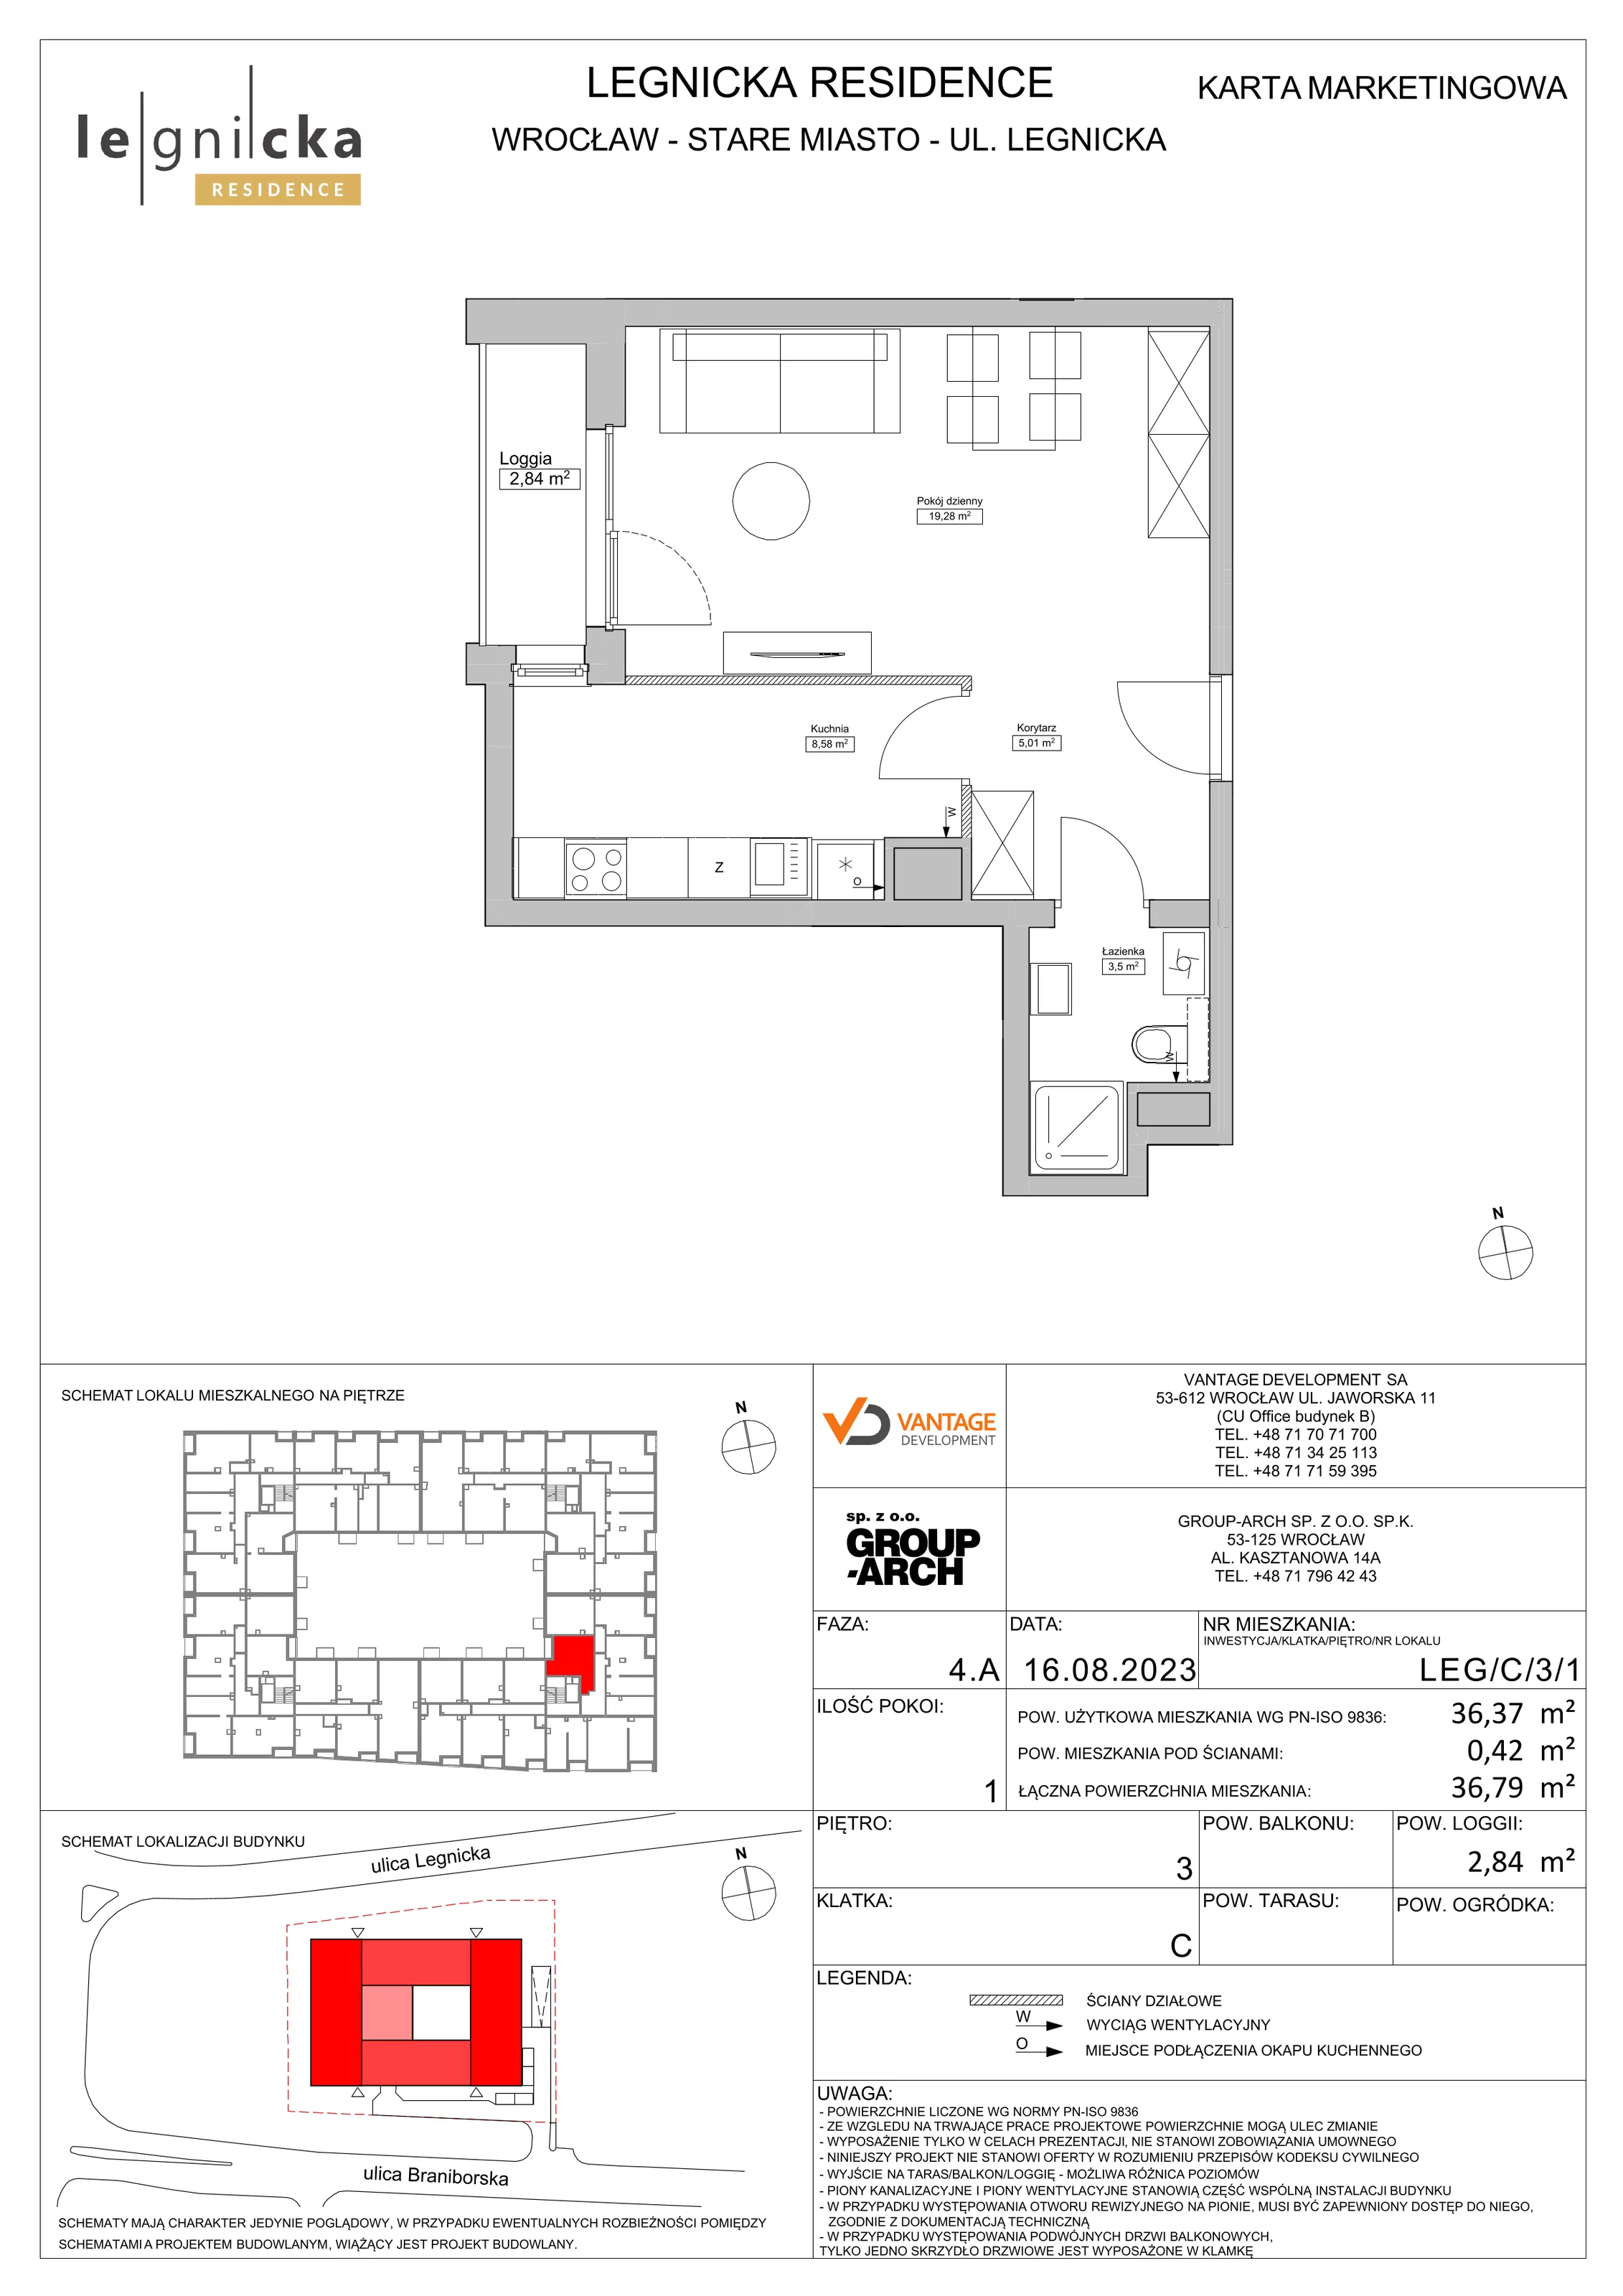 Apartament inwestycyjny 36,37 m², piętro 3, oferta nr LEG/C/3/1, Legnicka Residence, Wrocław, Szczepin, ul. Legnicka 36